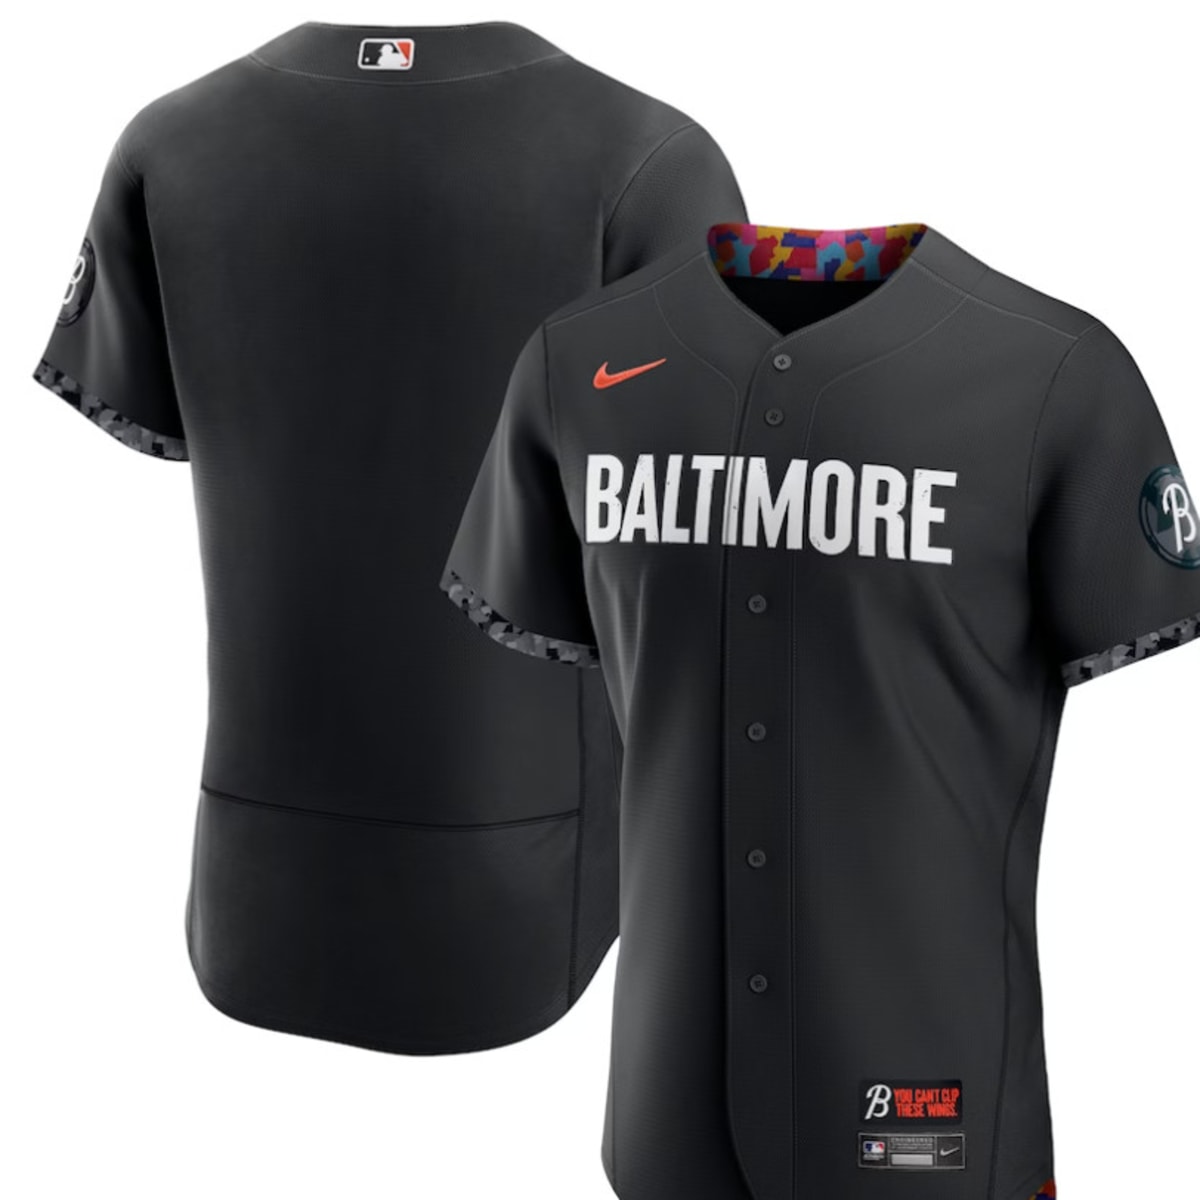 MLB Baltimore Orioles City Connect (Cedric Mullins) Men's Replica